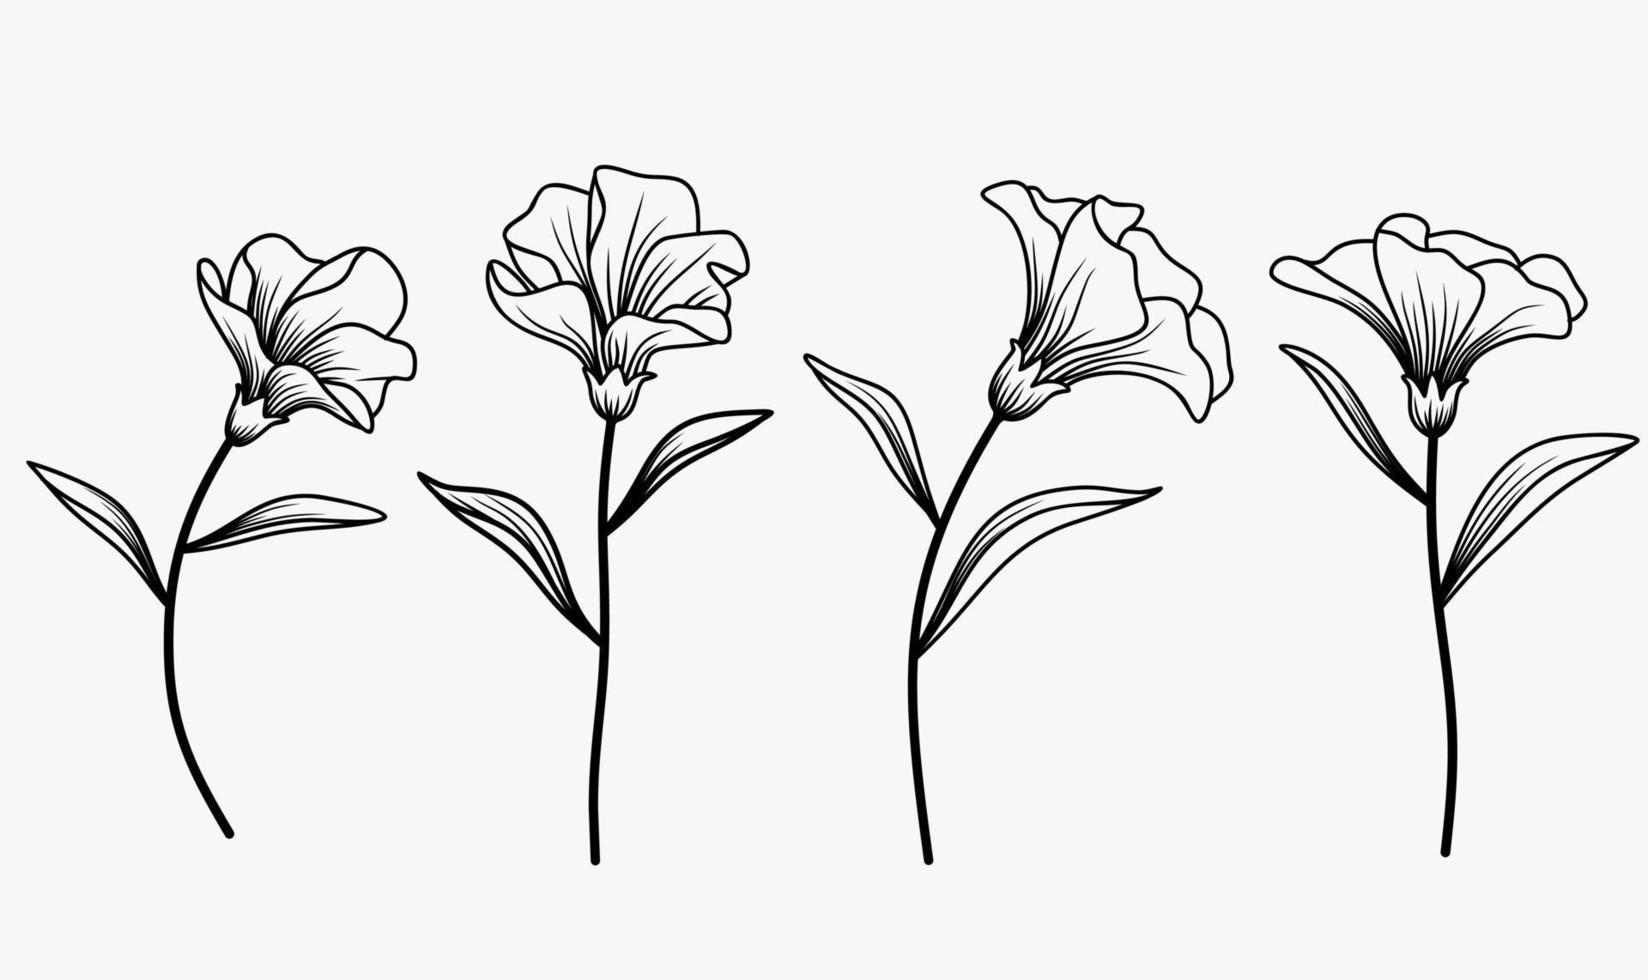 vector conjunto de flores abstractas de dibujo de una línea. diseño minimalista moderno dibujado a mano para logotipo, icono o emblema creativo